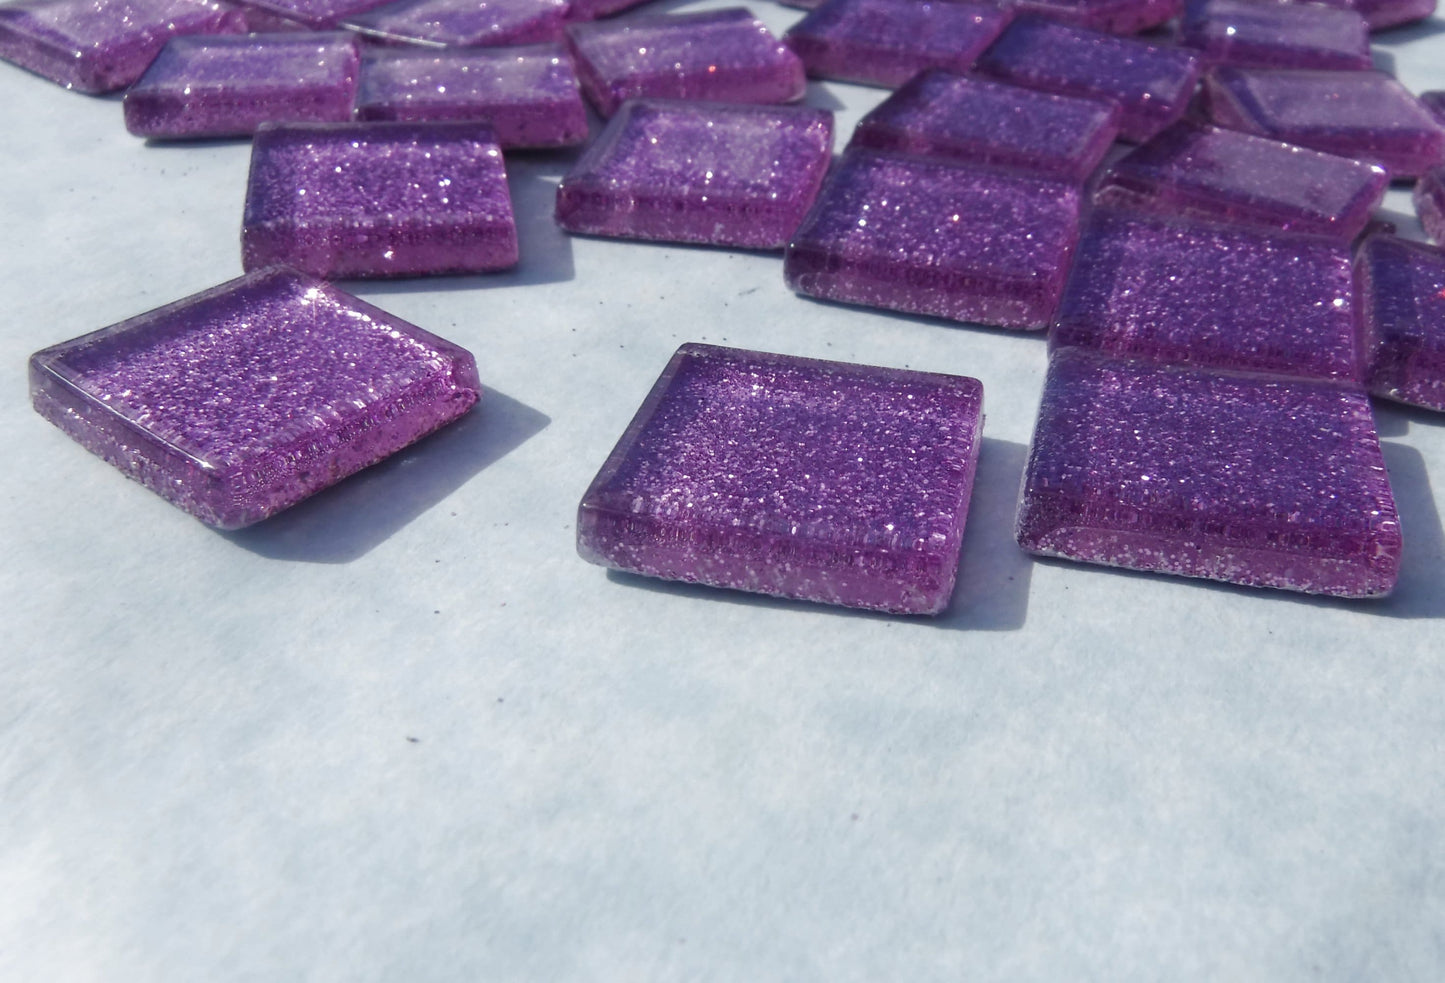 Light Purple Glitter Tiles - 20mm Mosaic Tiles - 25 Metallic Glass Tiles in Lavender